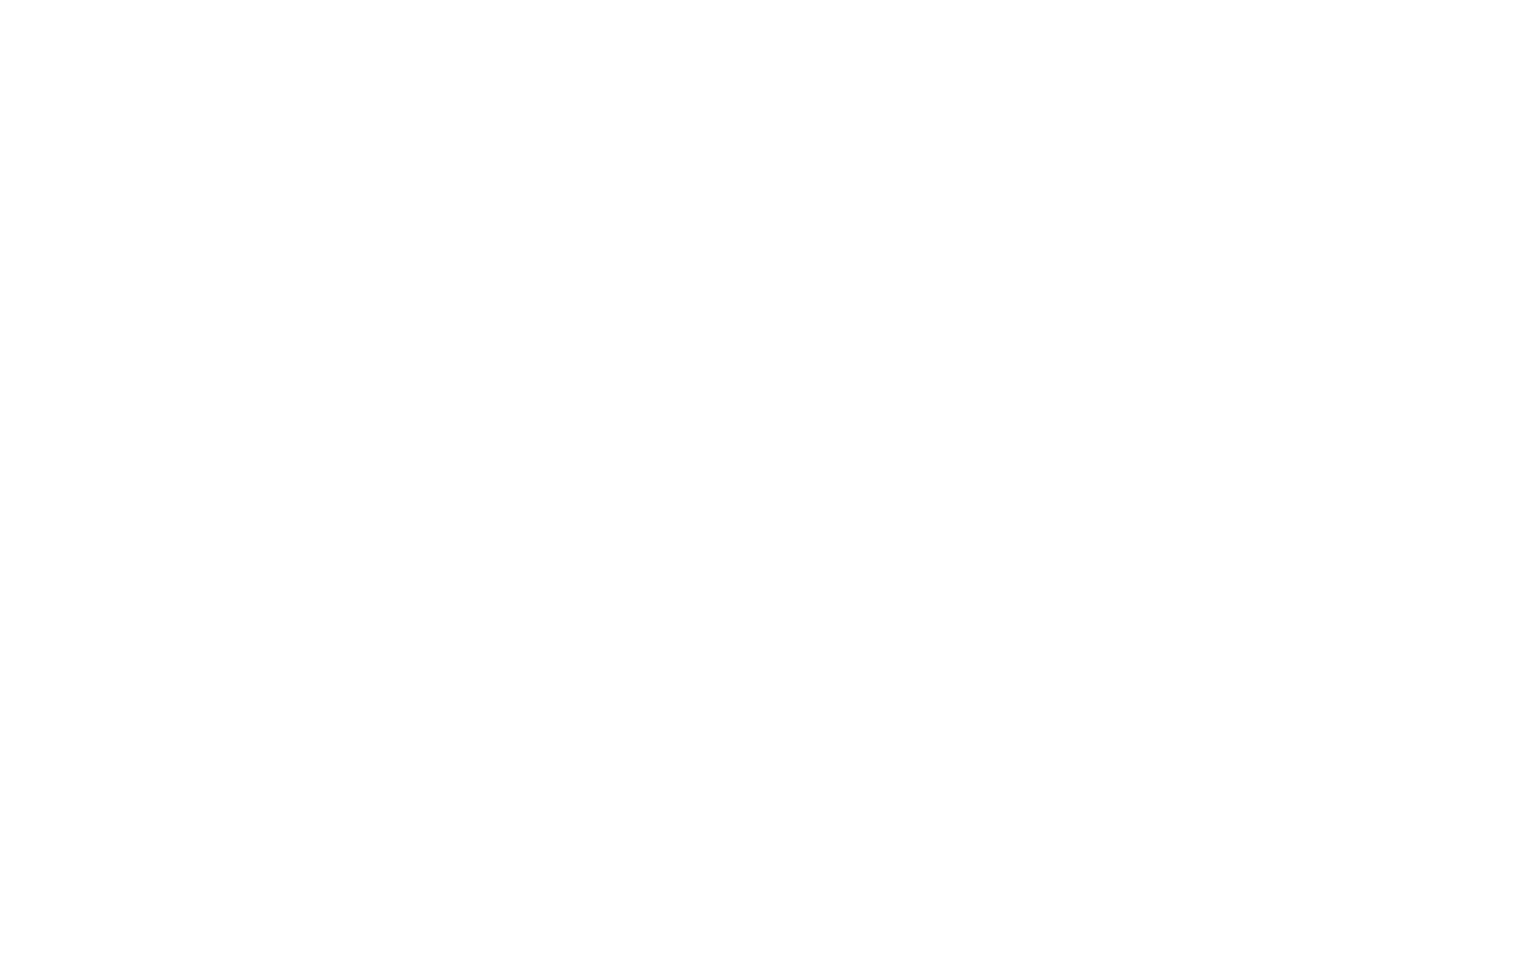 Manning & Napier logo for dark backgrounds (transparent PNG)